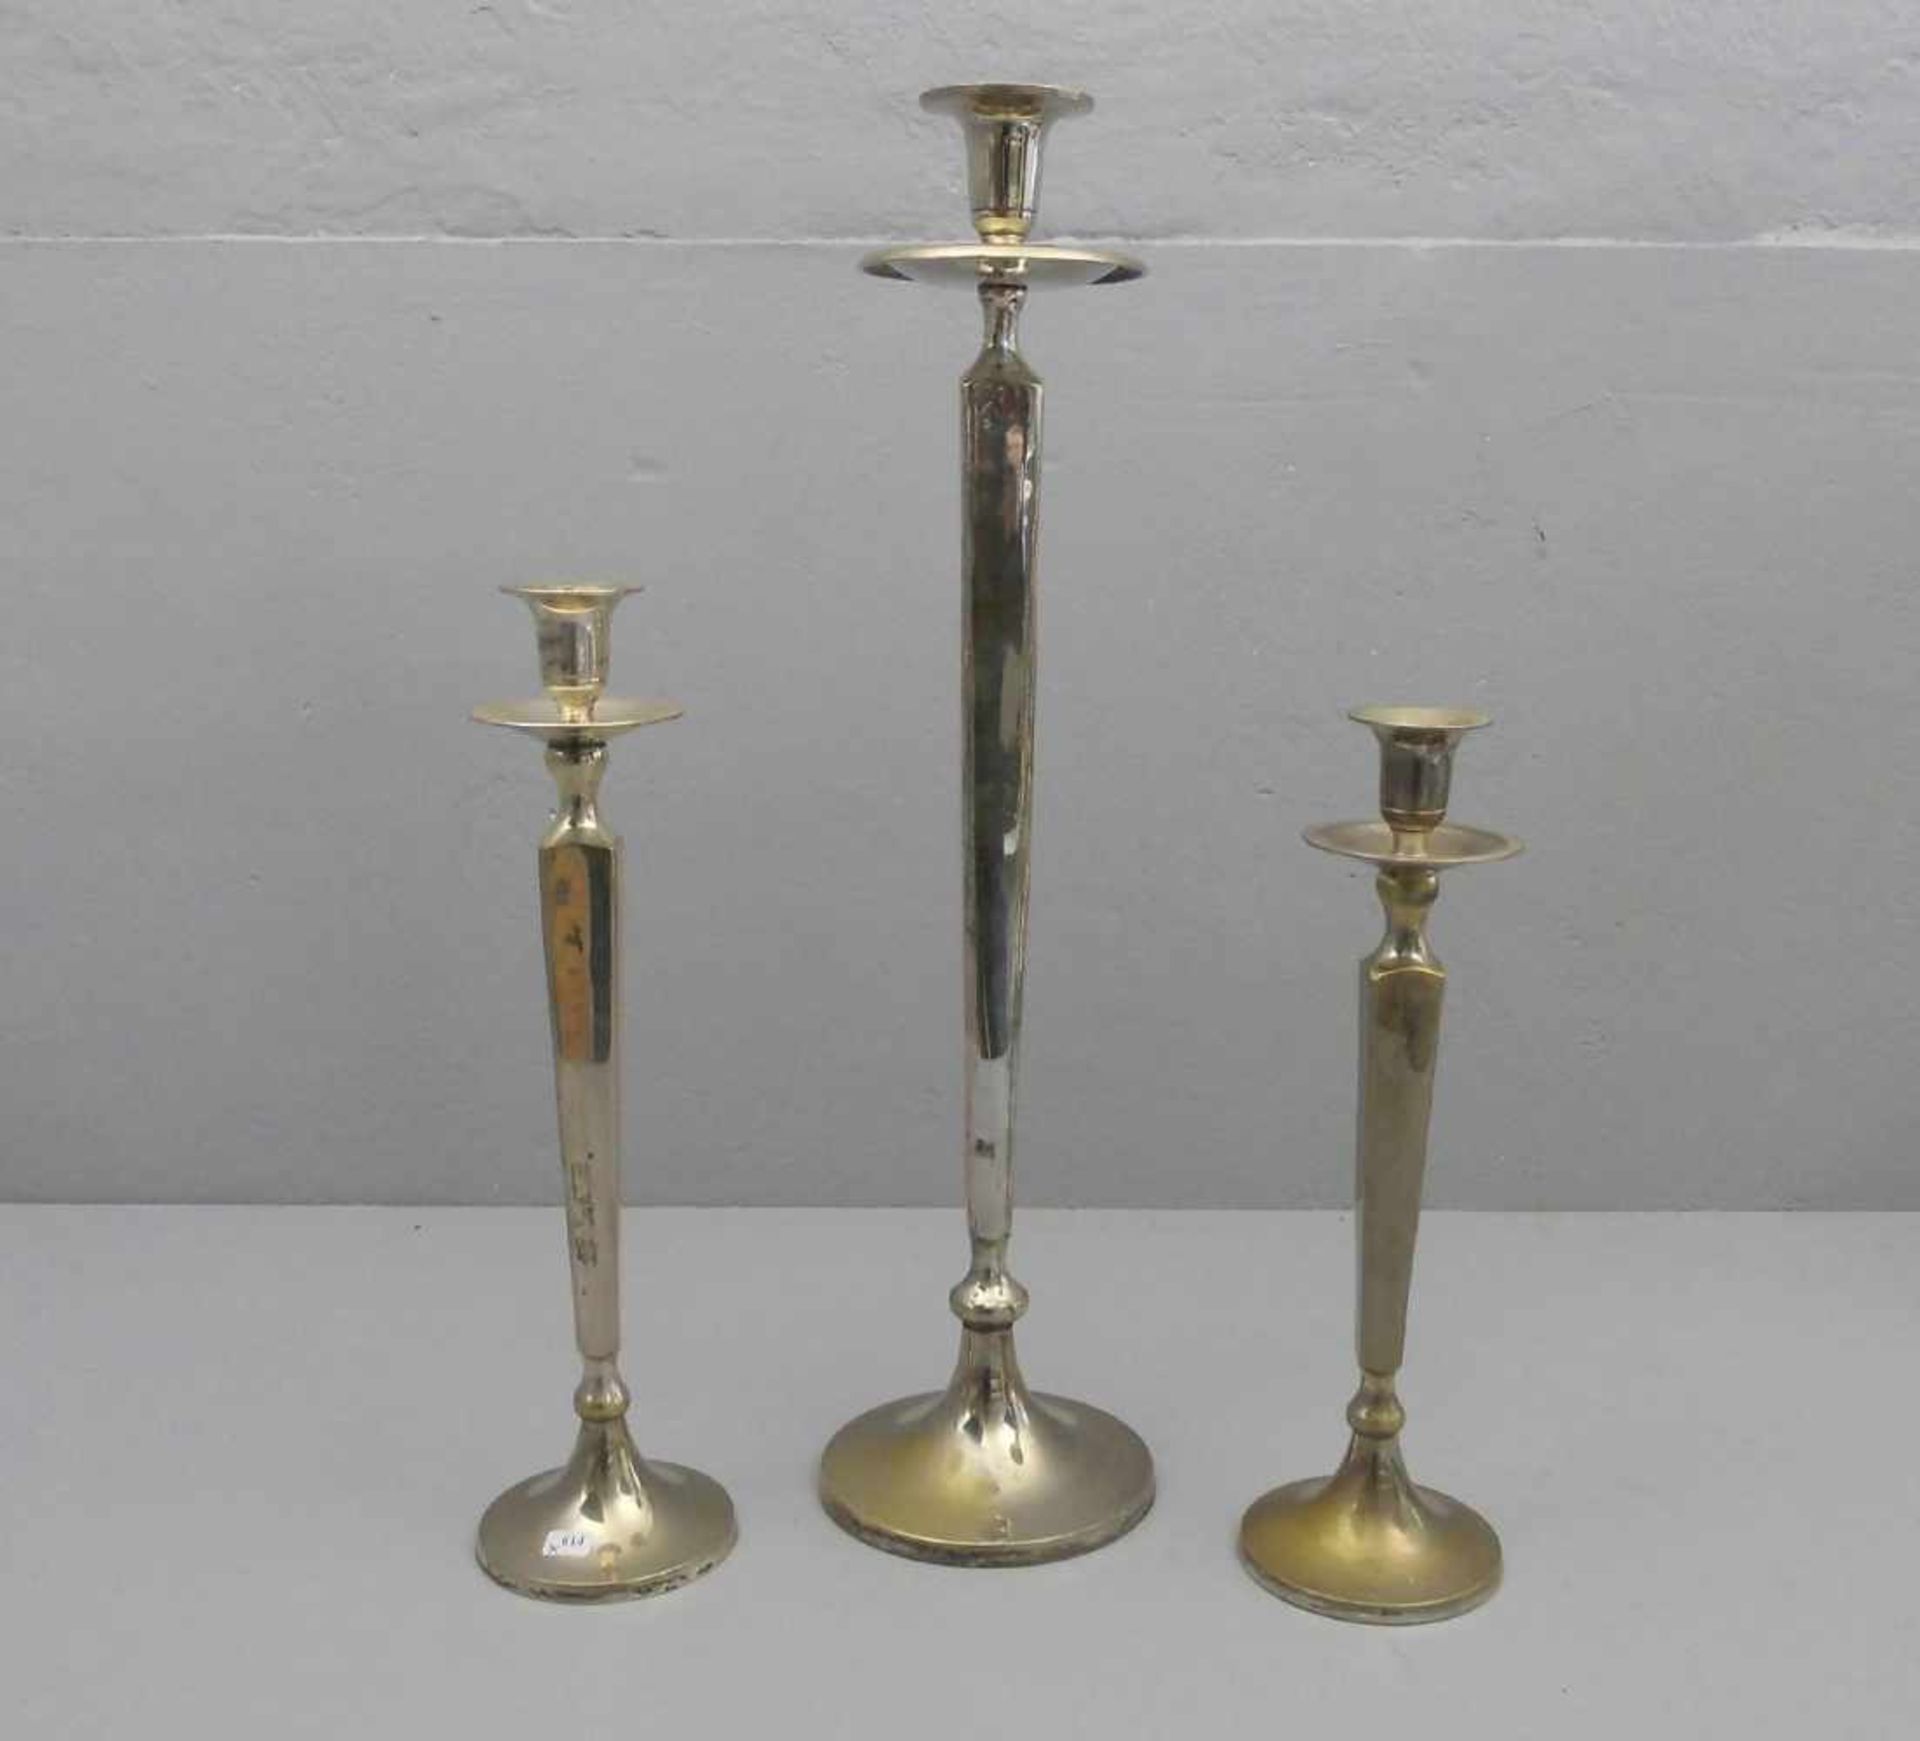 SATZ VON 3 TISCHLEUCHTERN unterschiedlicher Größe / candlestands, verchromtes Metall, 2. Hälfte